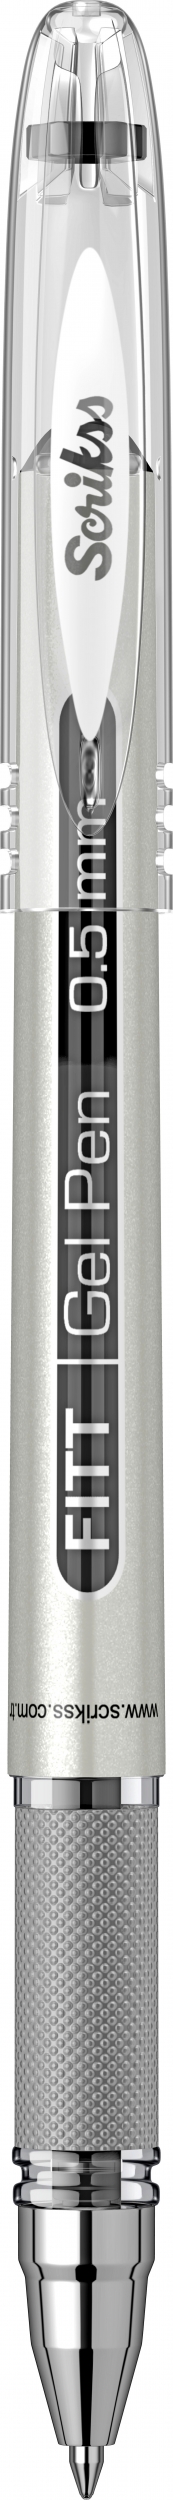 Гел ролер Scrikss Fitt Gel, модел 78621, 0,5 мм., Черен